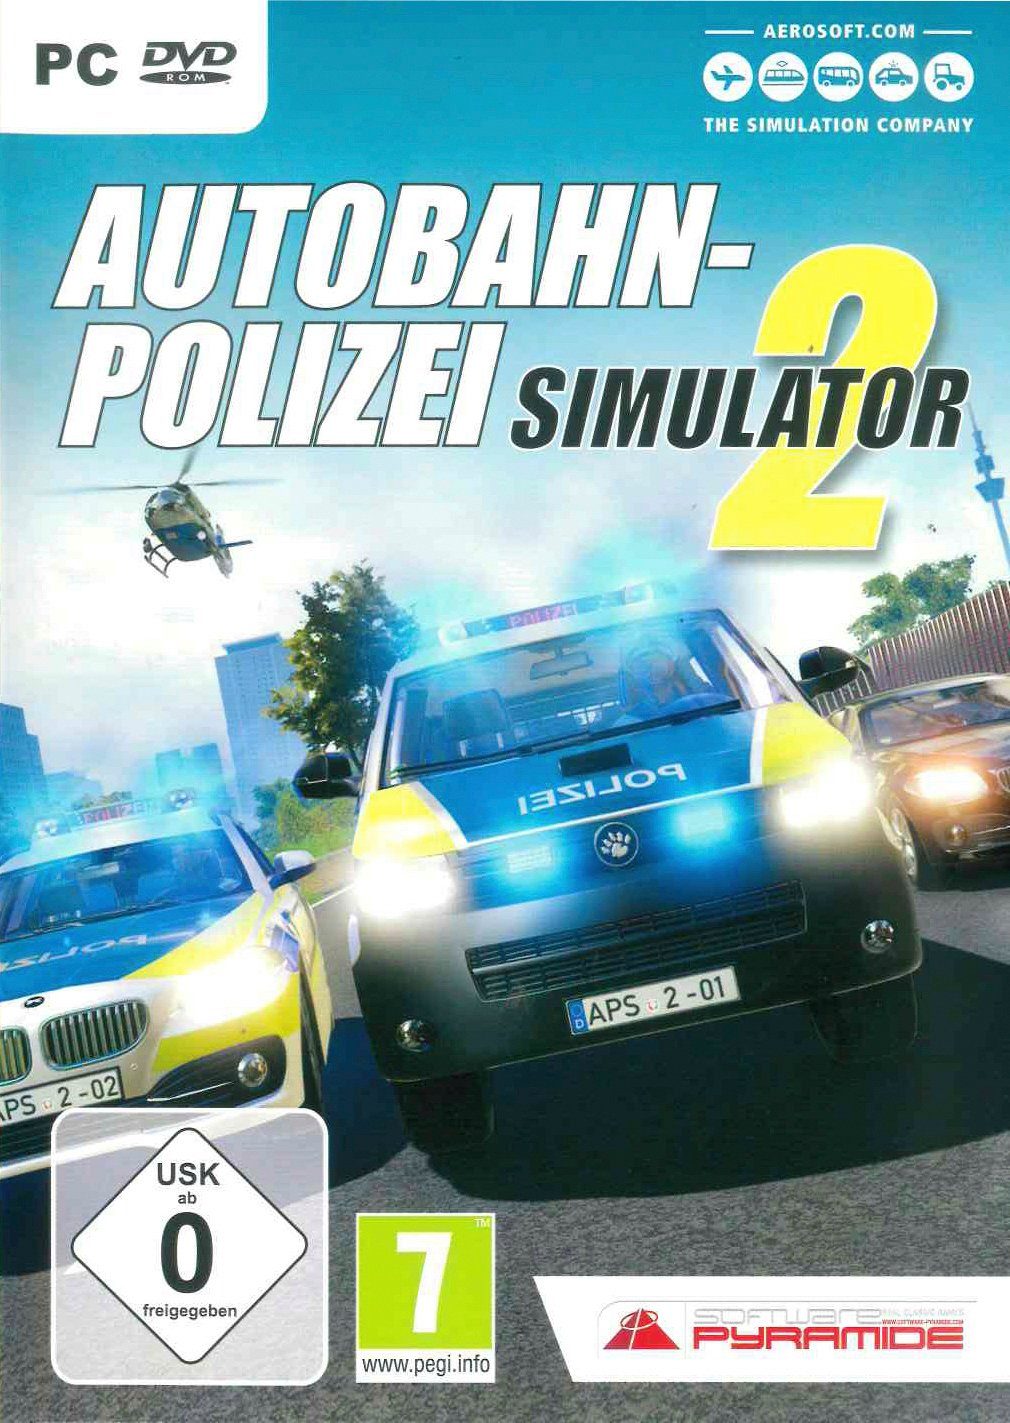 Autobahn-Polizei Simulator PC 2